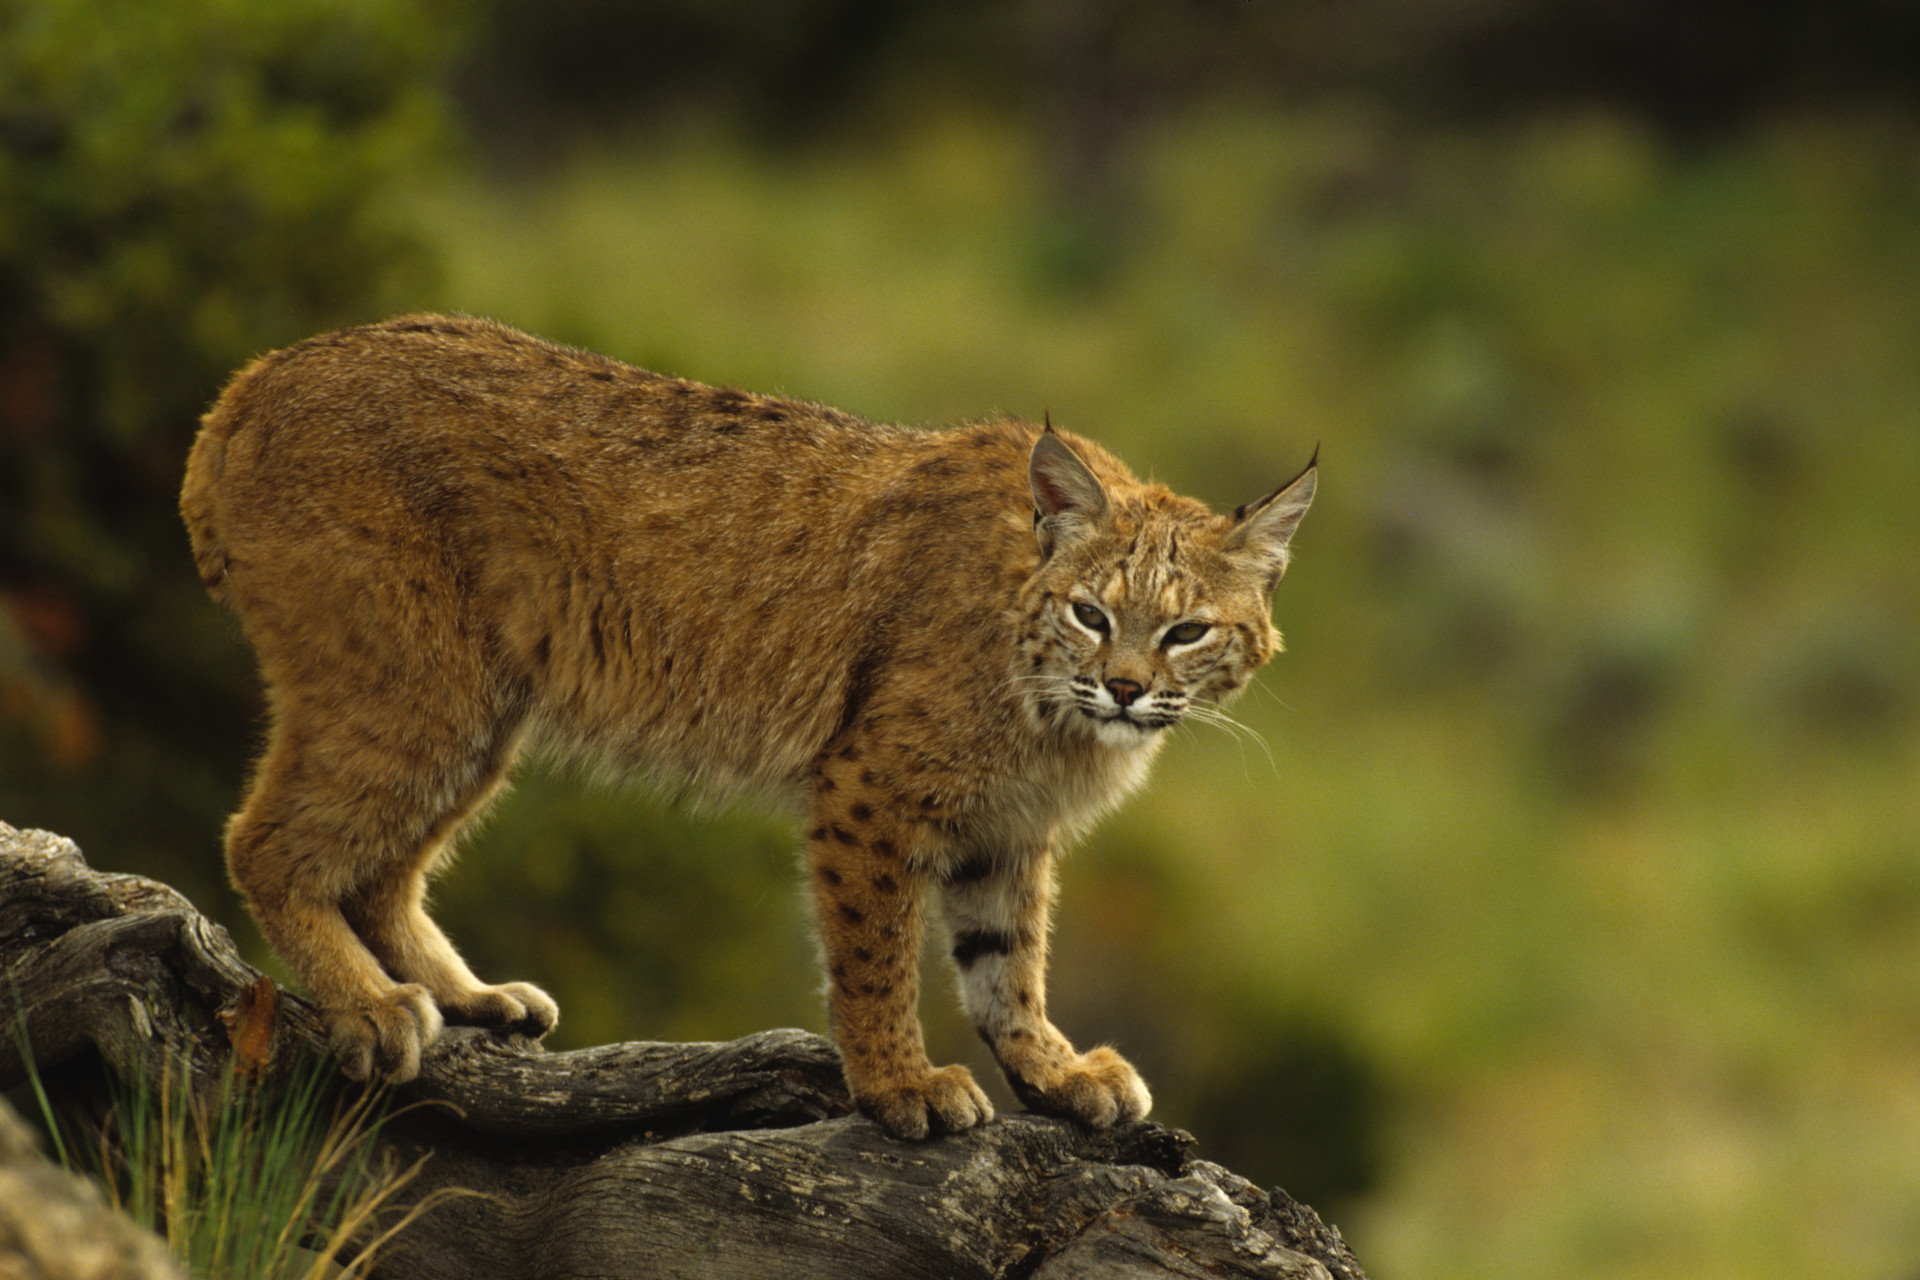 Le lynx américain est l'animal phare pour de nombreux amateurs de safaris. Stoïques et majestueux, voir ces félins en personne est une expérience incomparable.